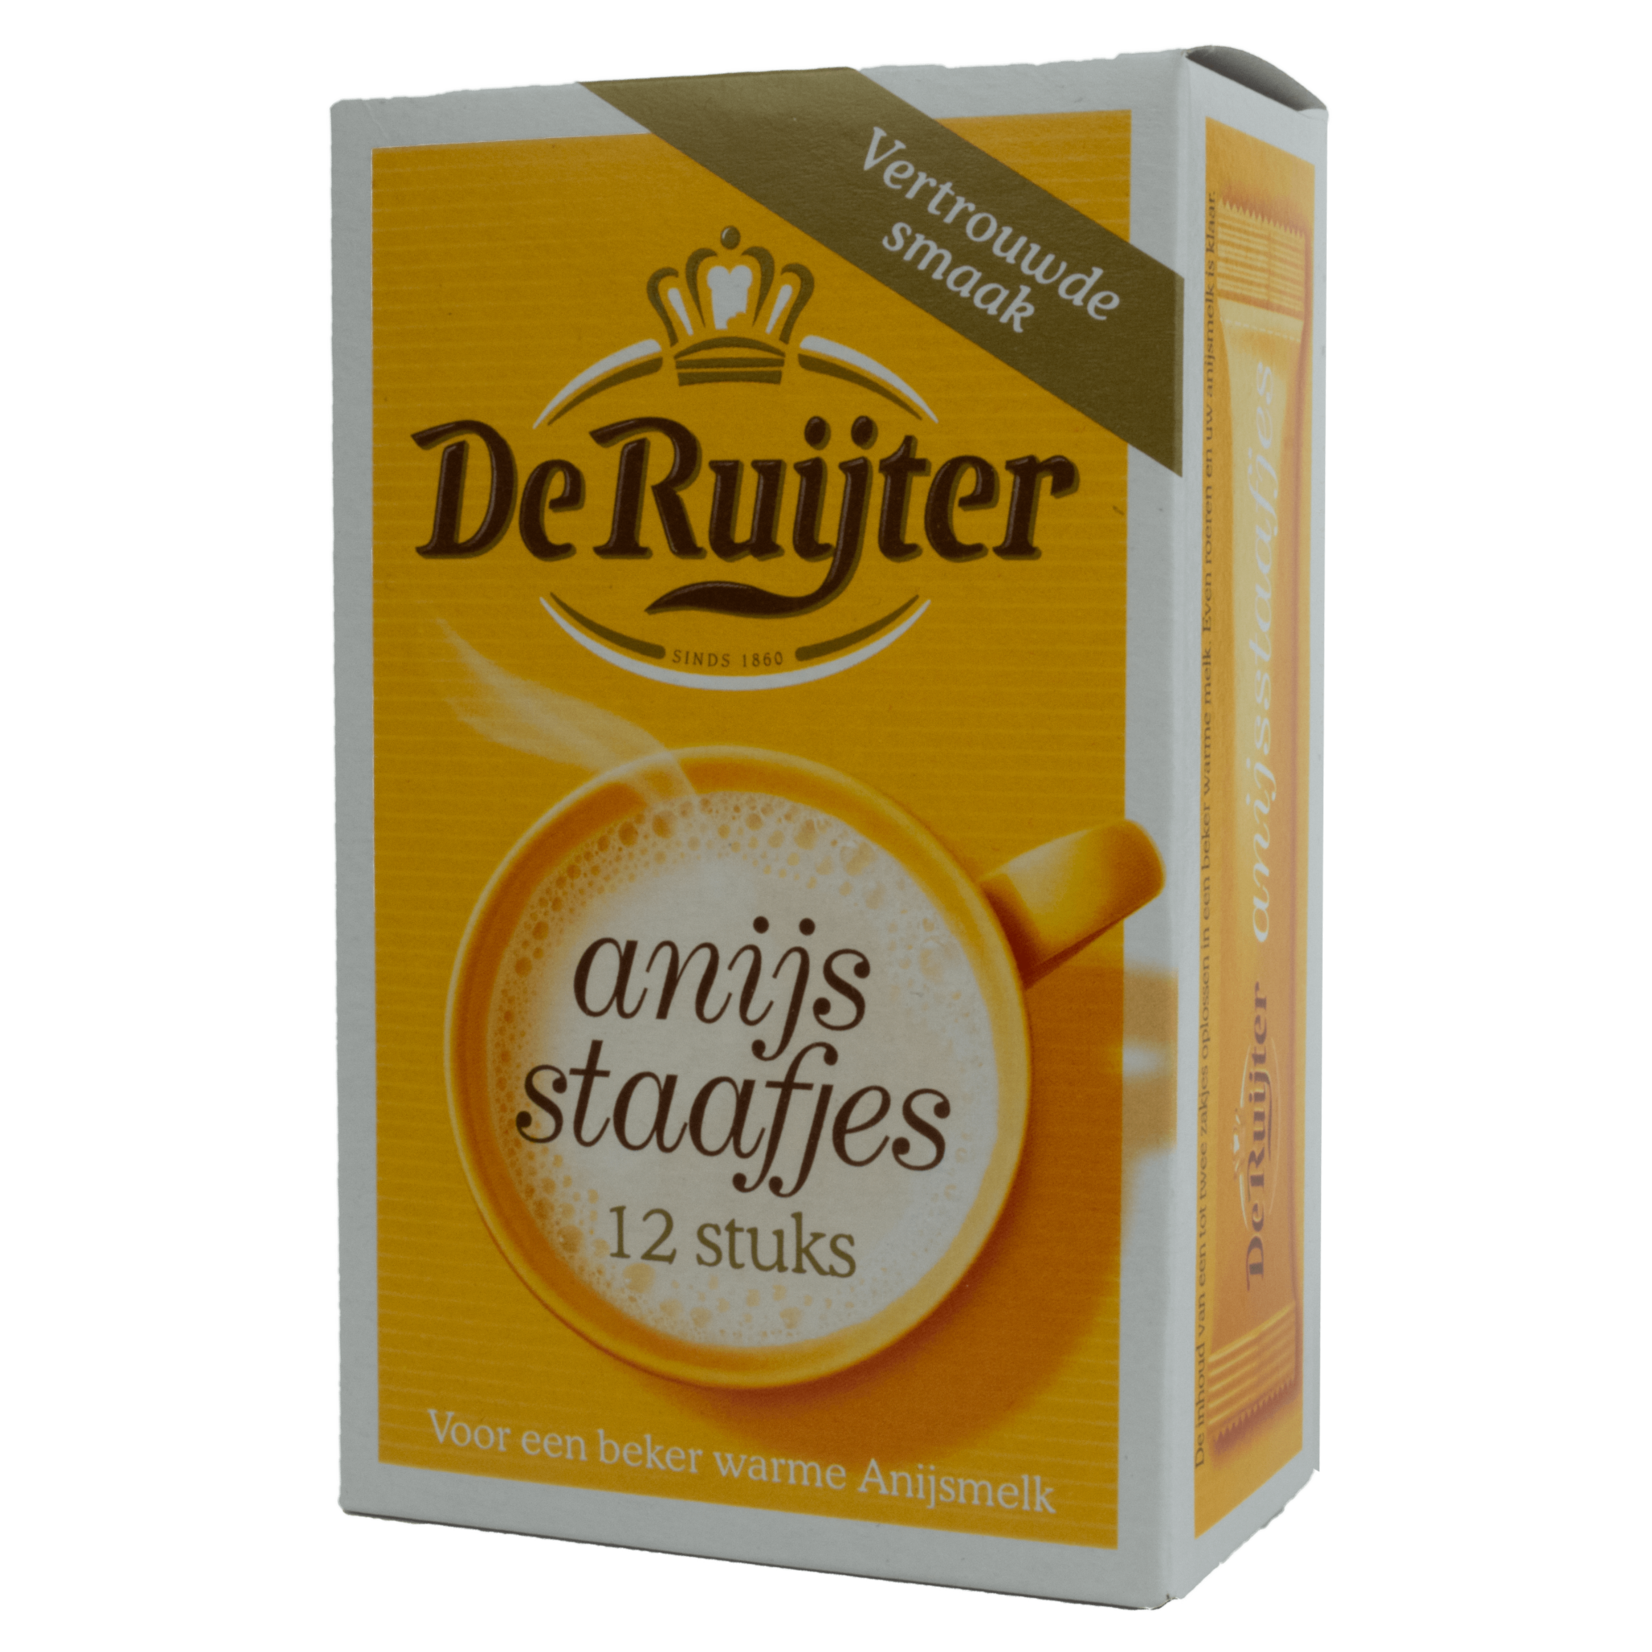 De Ruijter De Ruijter Anise Sticks 12X6.3g